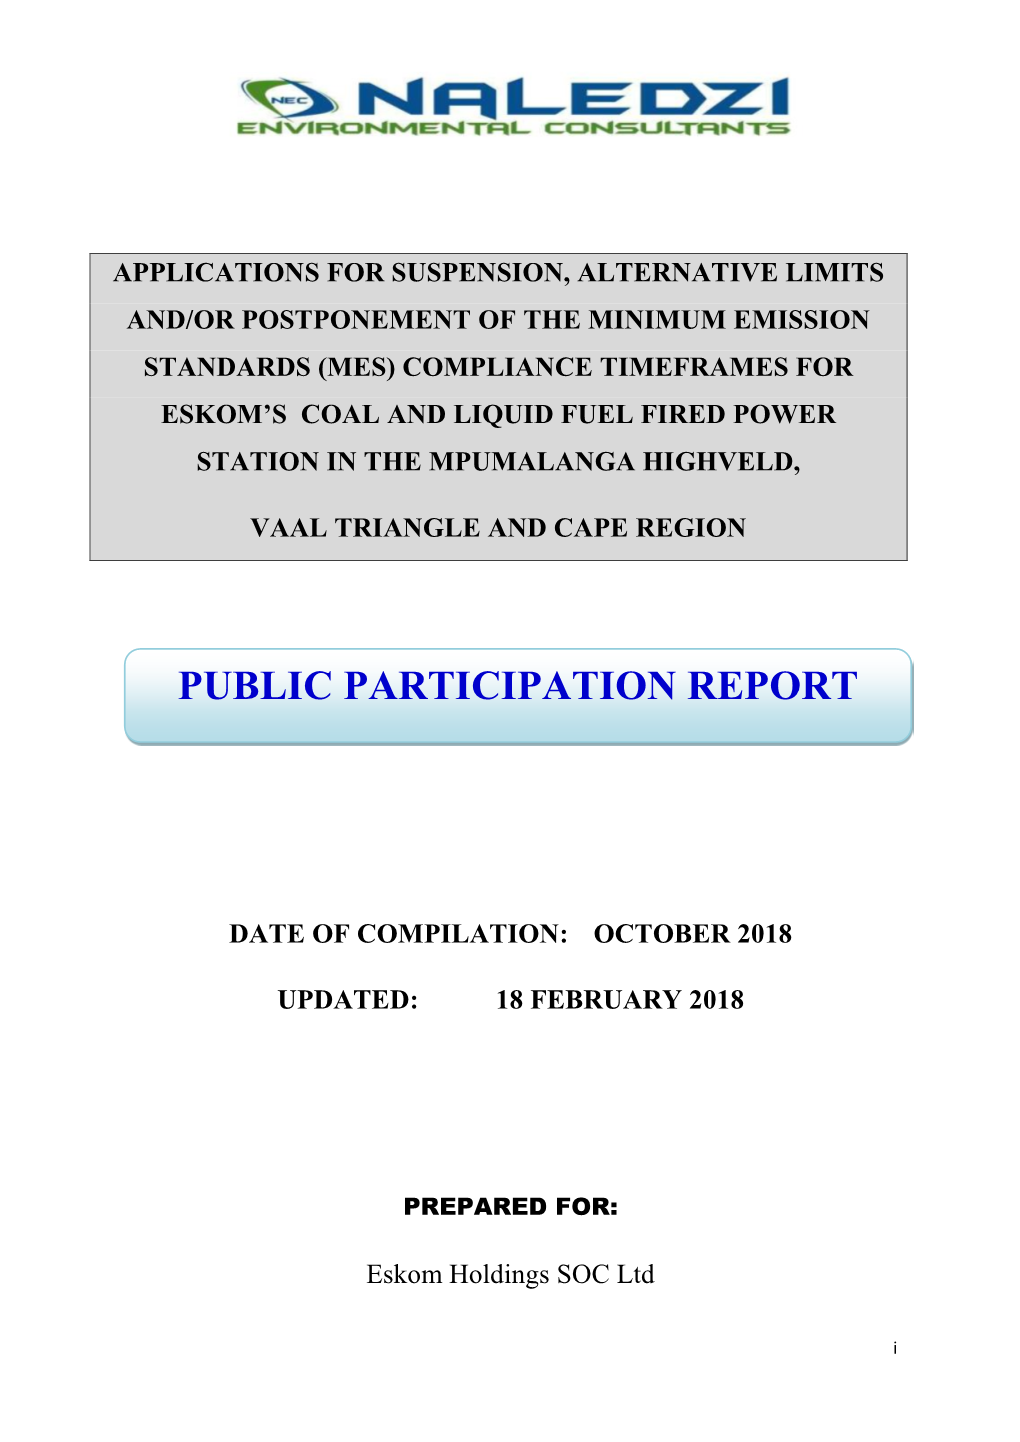 Public Participation Report